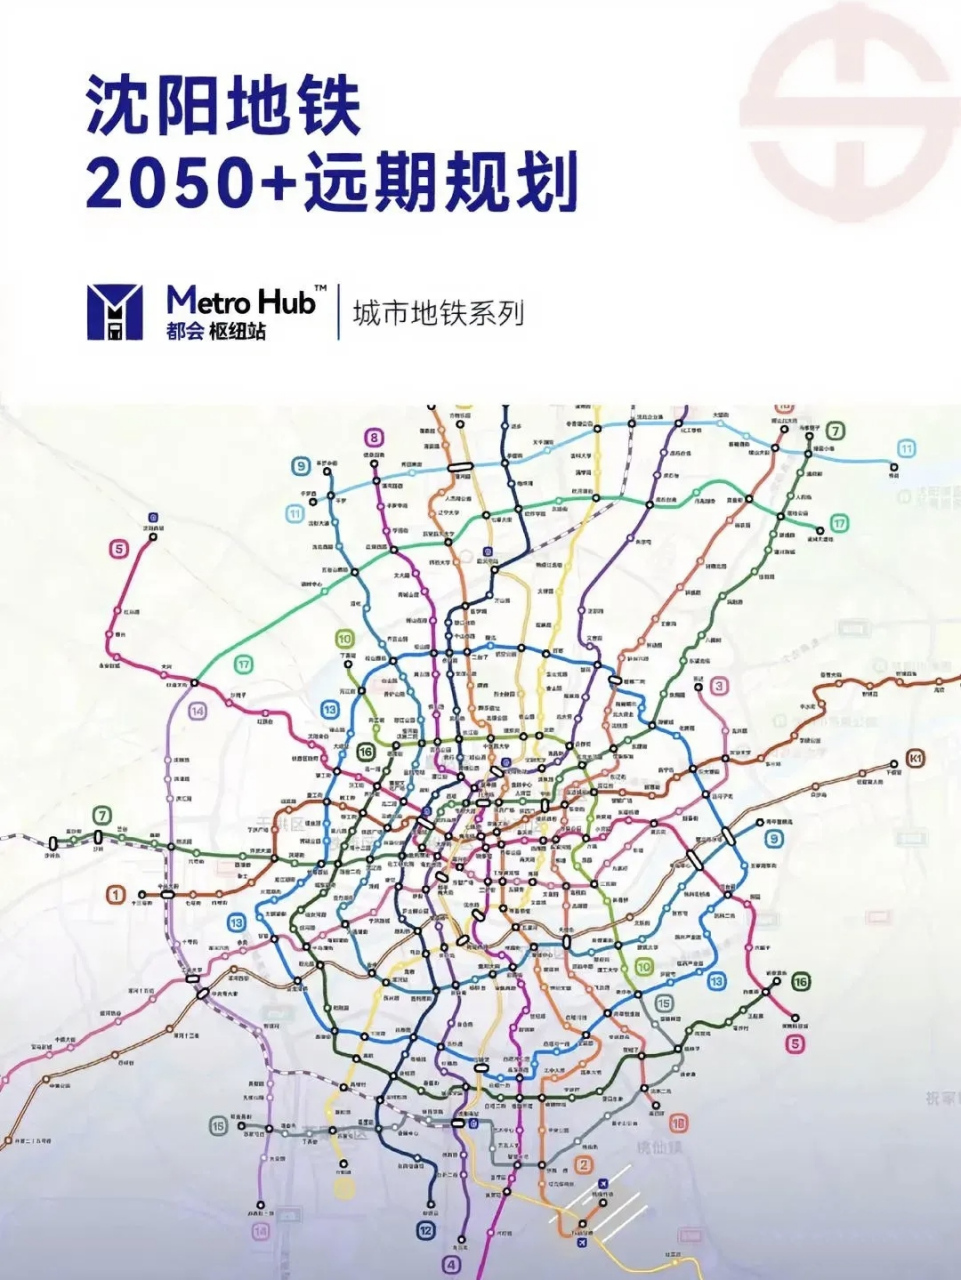 这2050年沈阳地铁规划这太宏图大志啦!